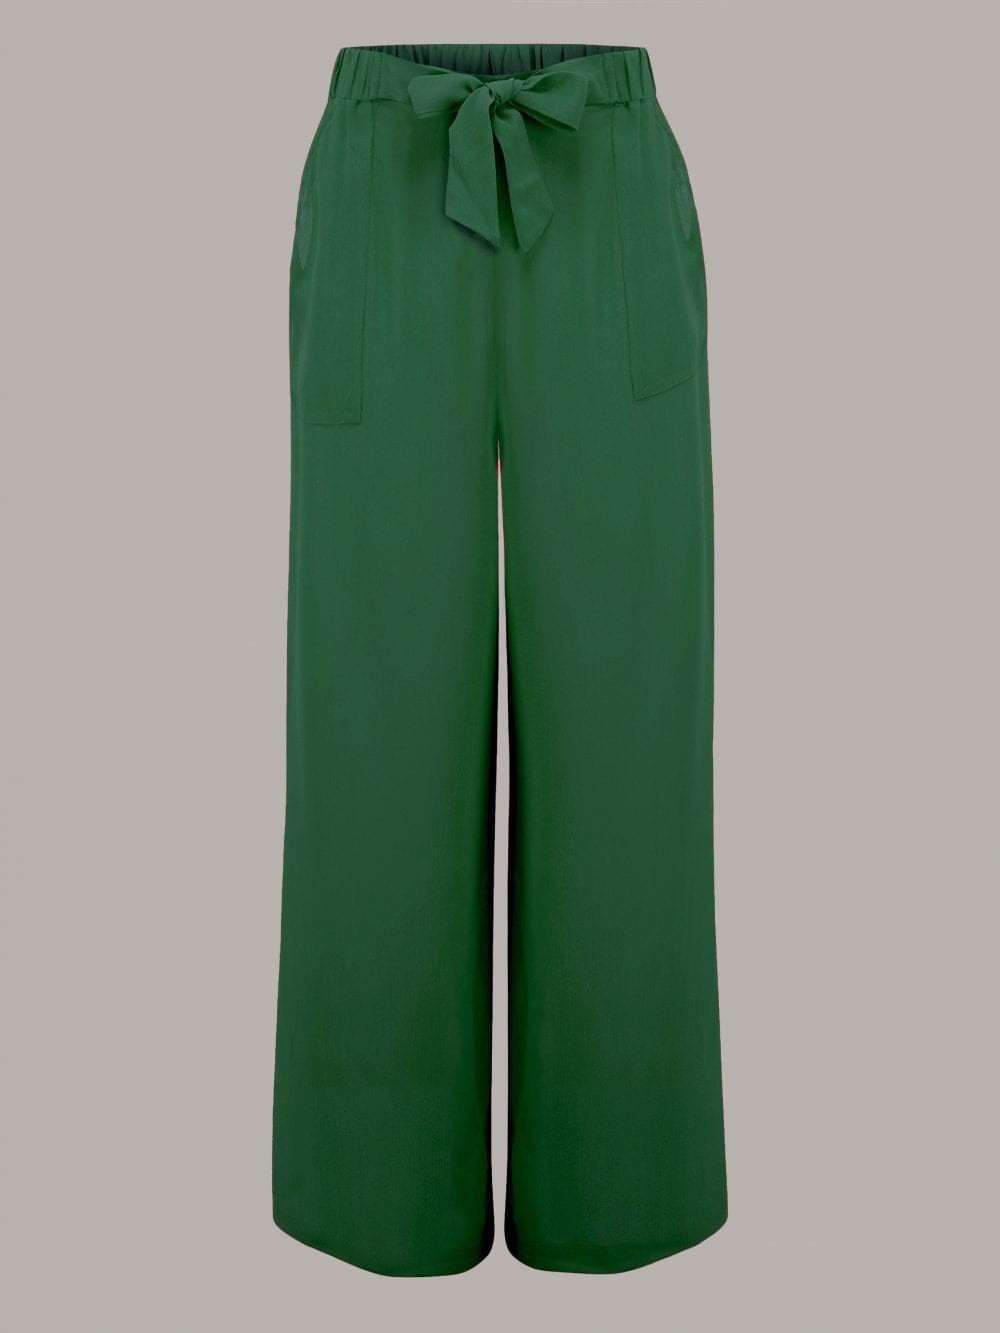 Gretta 1940s Trousers in Green